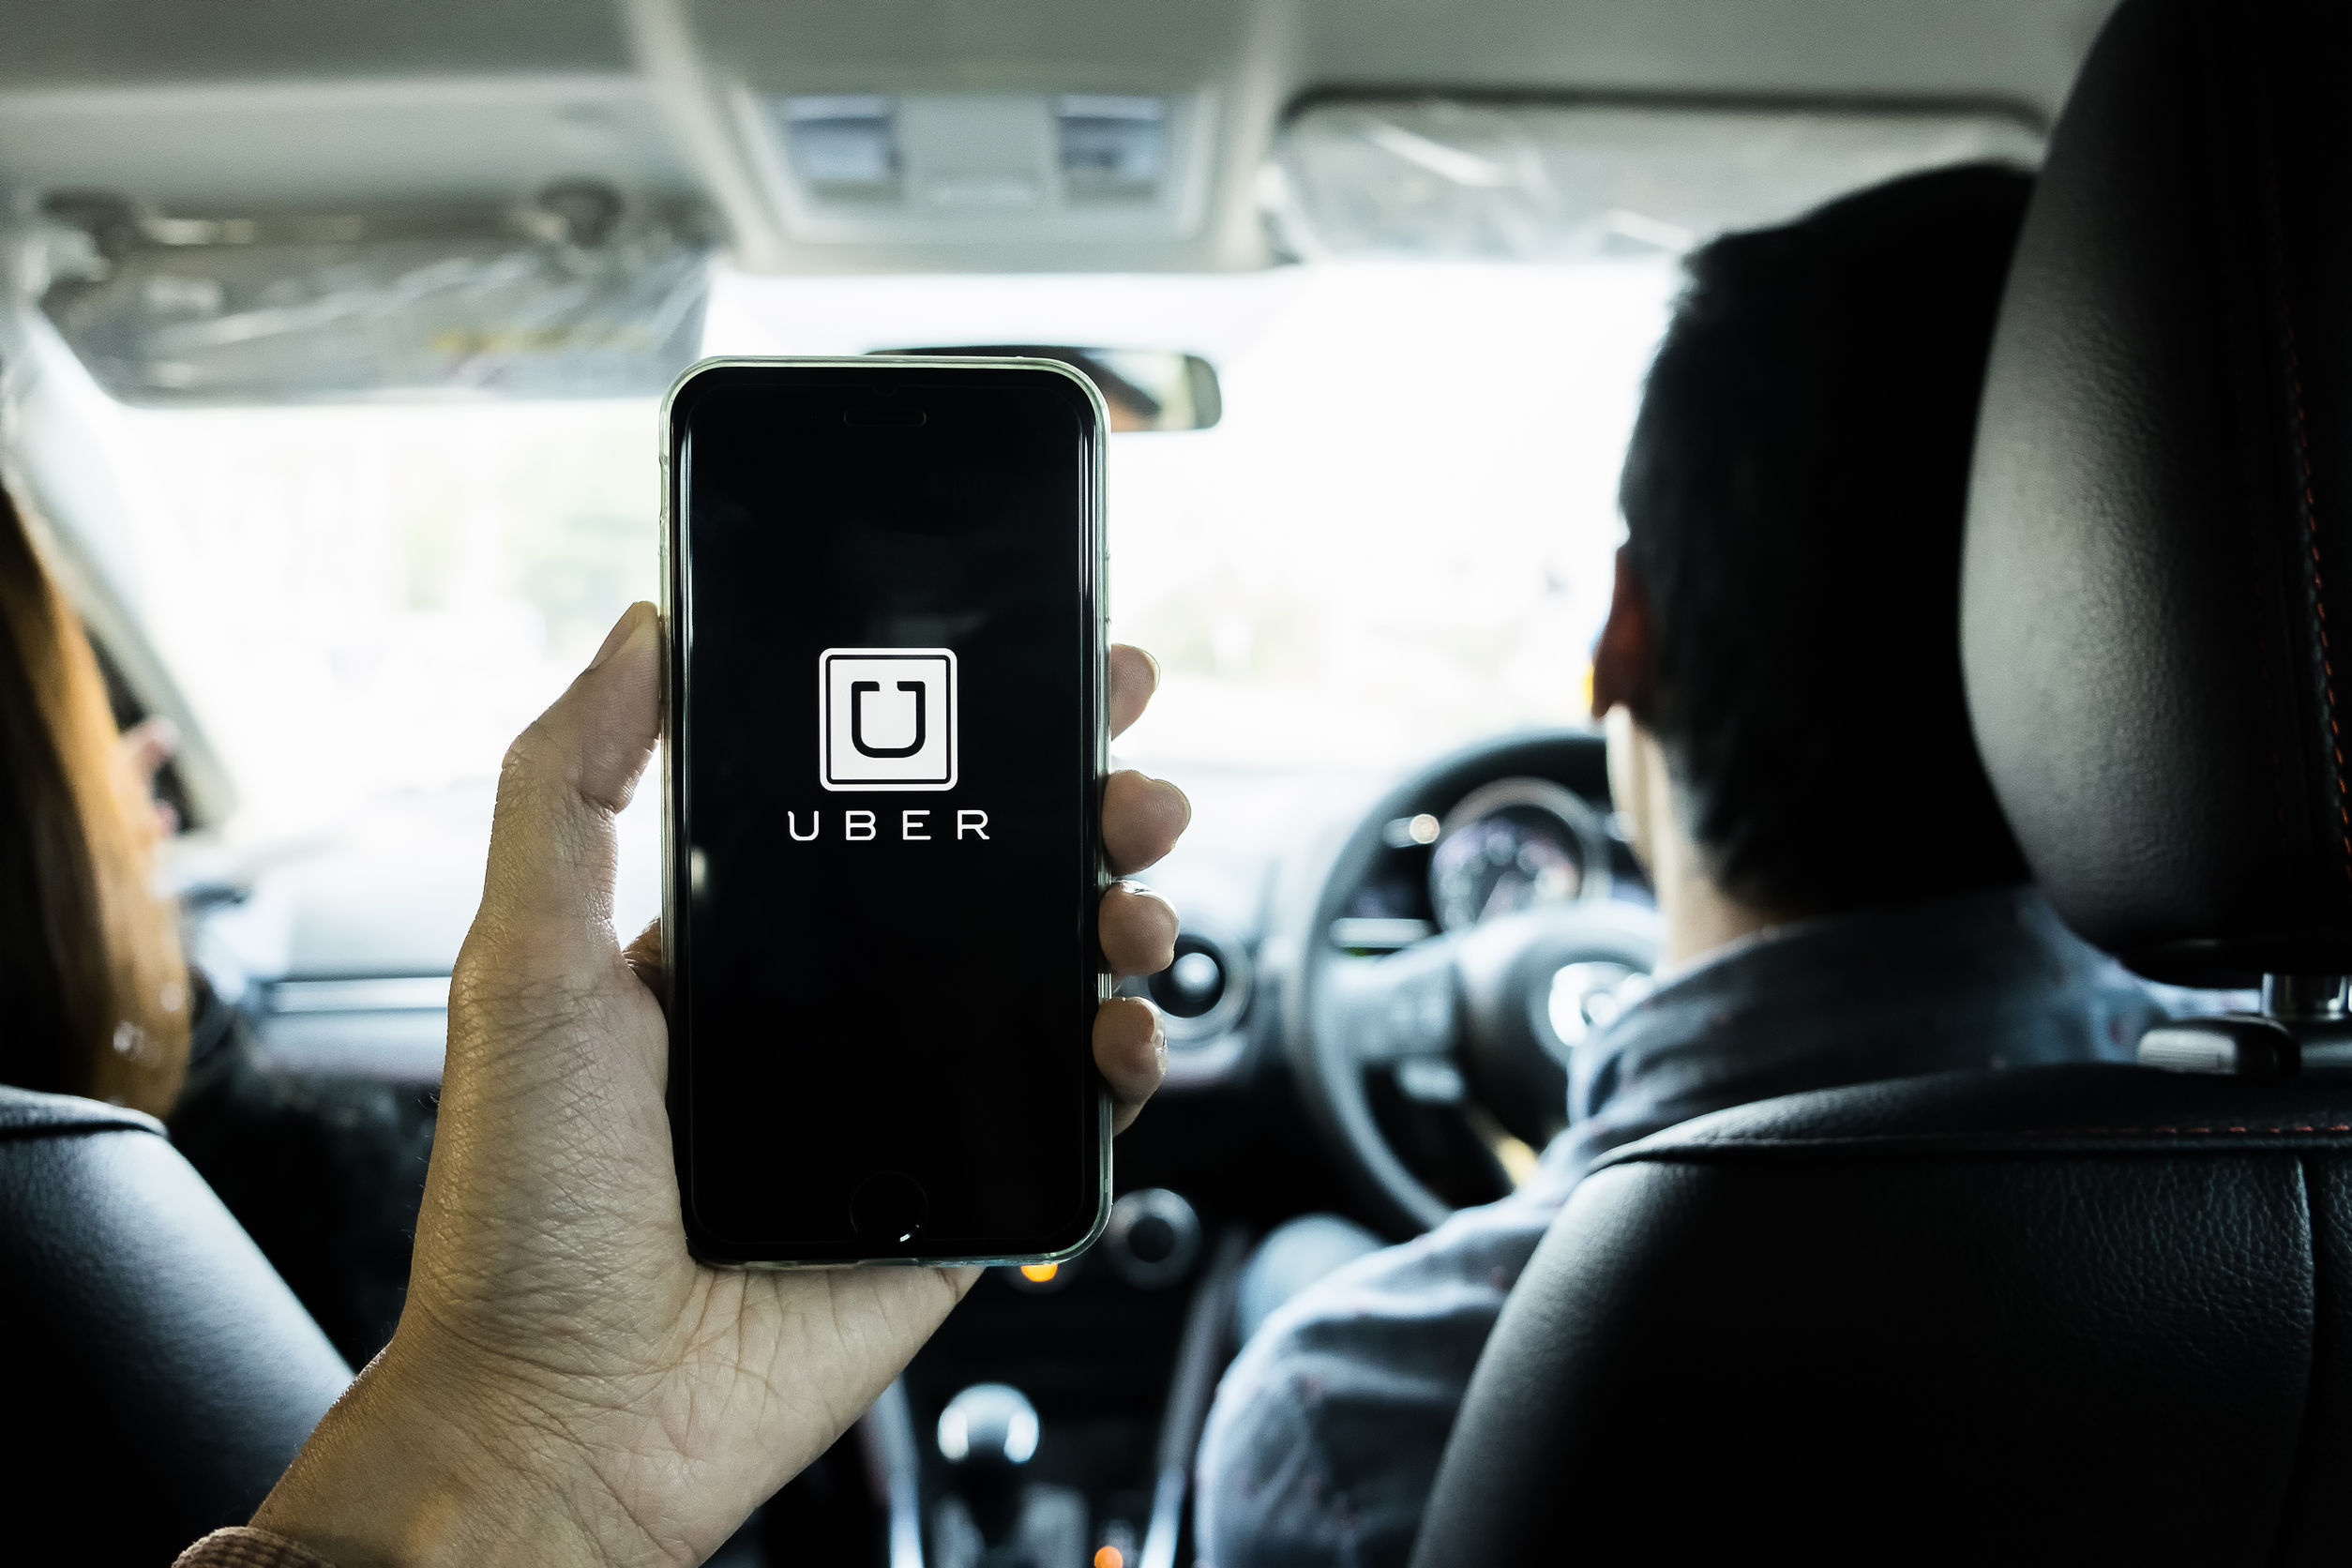 Începând de miercuri, Uber majorează tarifele pentru orele de vârf, pentru a încuraja un număr mai mare de şoferi să fie activi pe aplicaţie şi a reduce timpul de aşteptare pentru clienţi